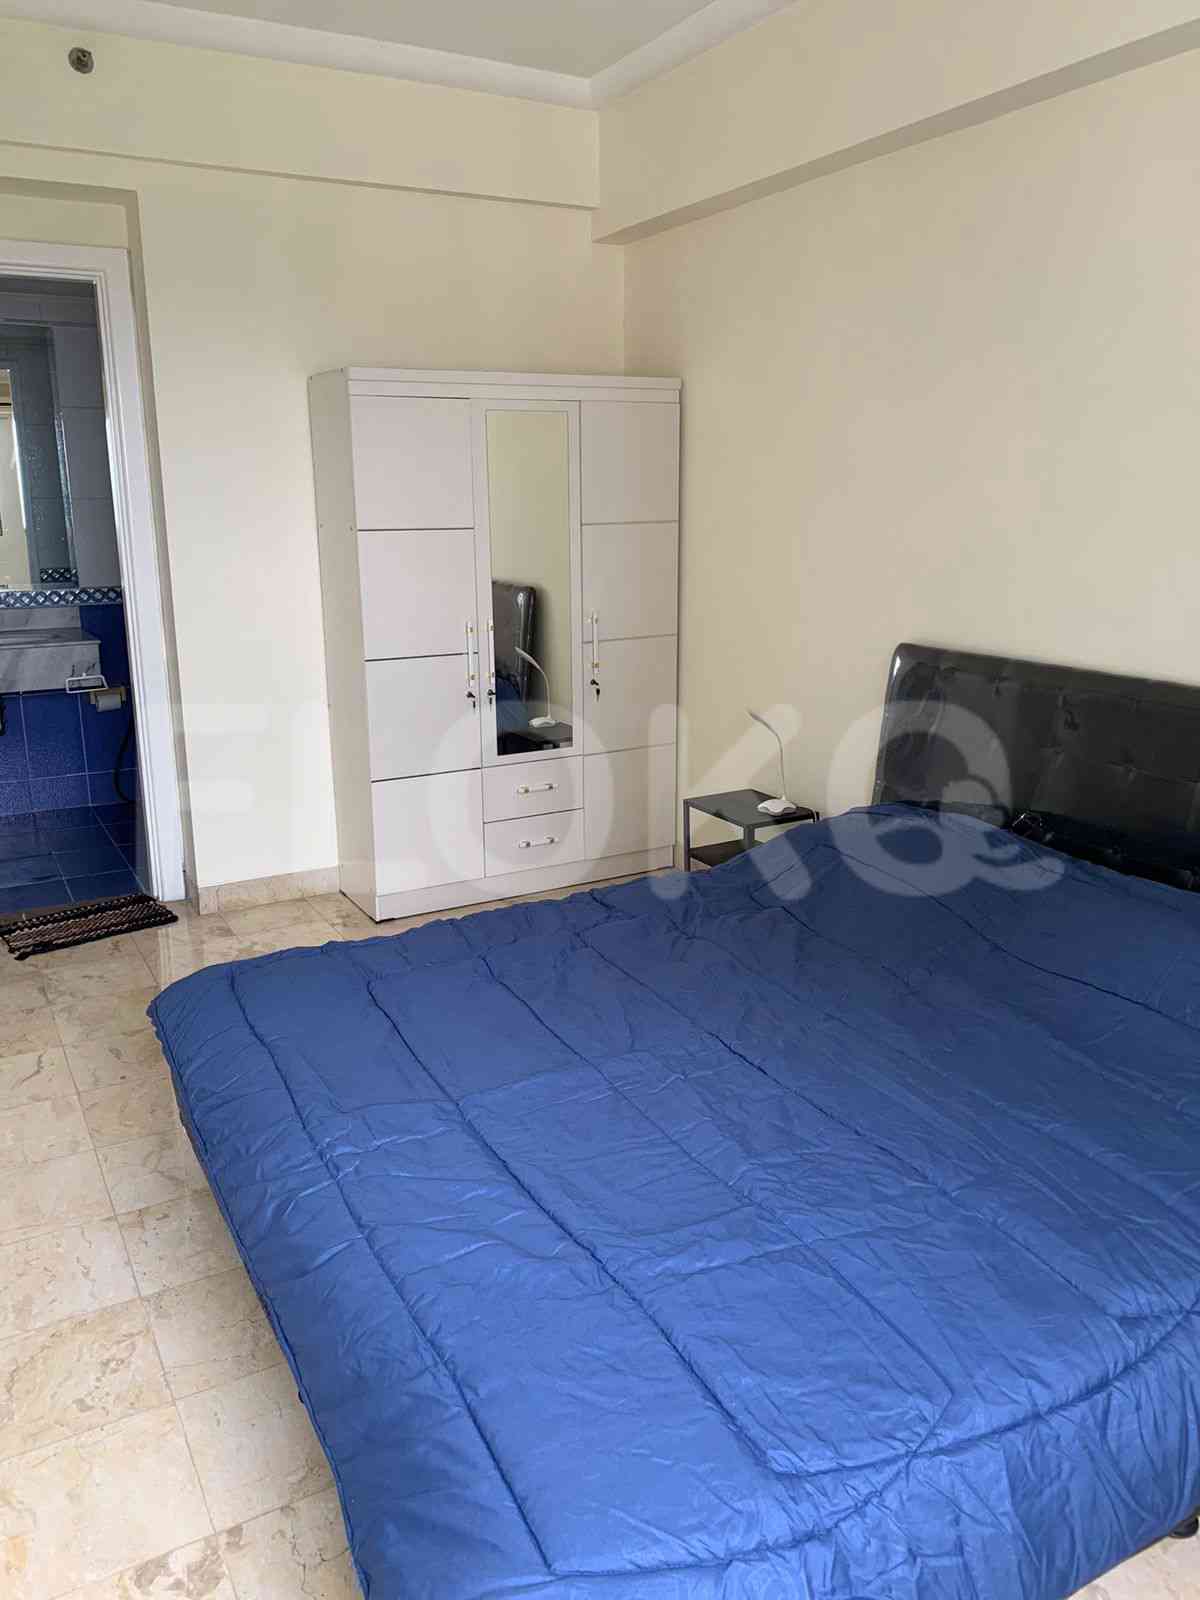 2 Bedroom on 23rd Floor for Rent in BonaVista Apartment - fle8f4 1